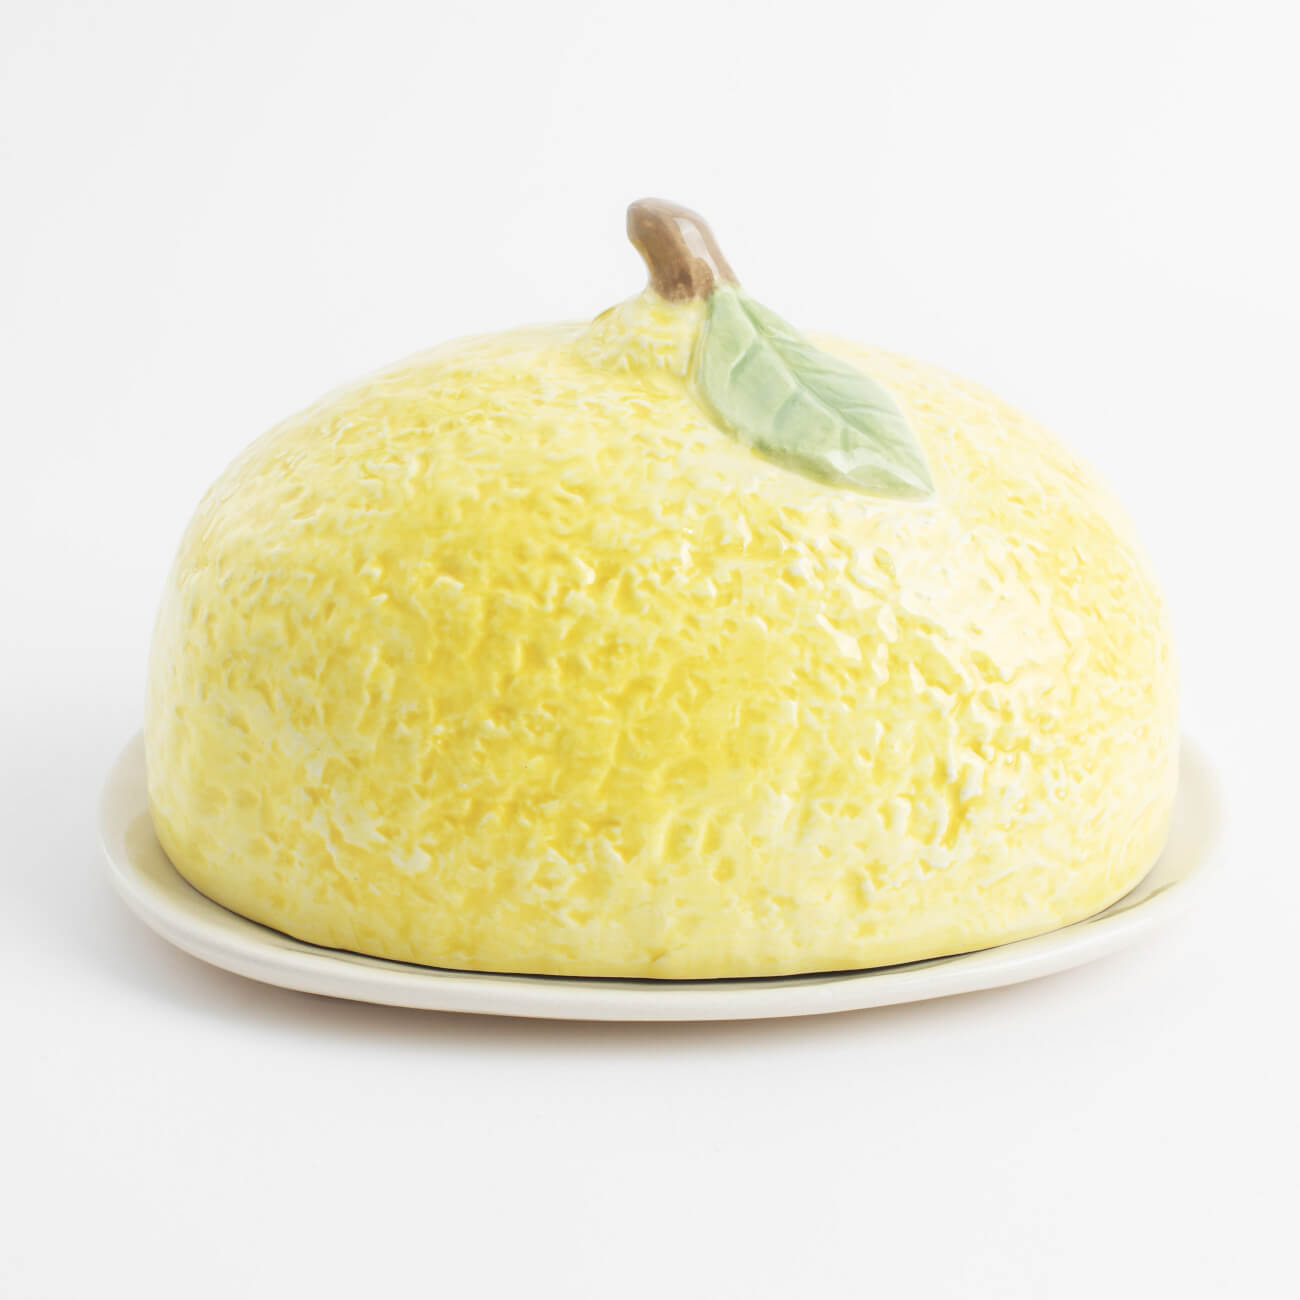 Масленка, 18 см, керамика, овальная, желтая, Лимон, Sicily in bloom масленка toya